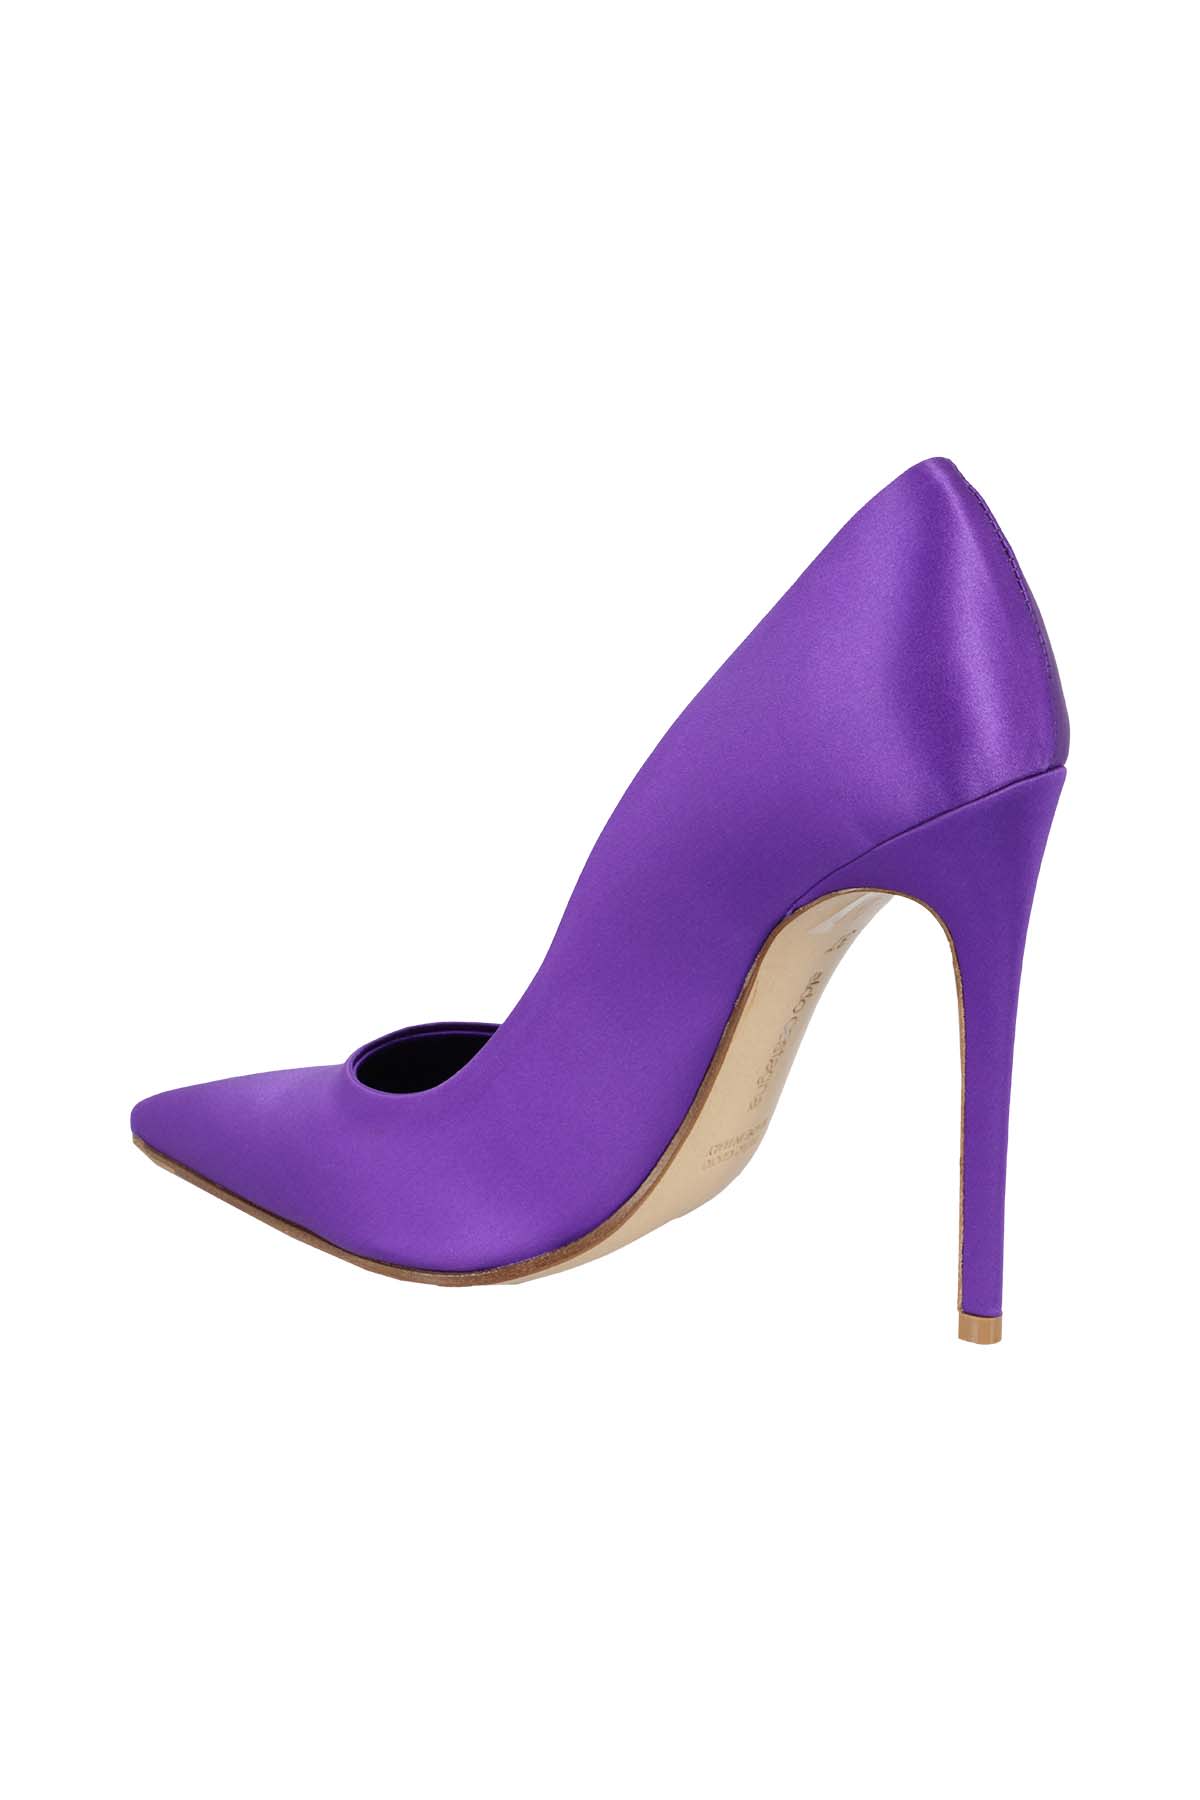 Aldo Castagna High-heeled shoe